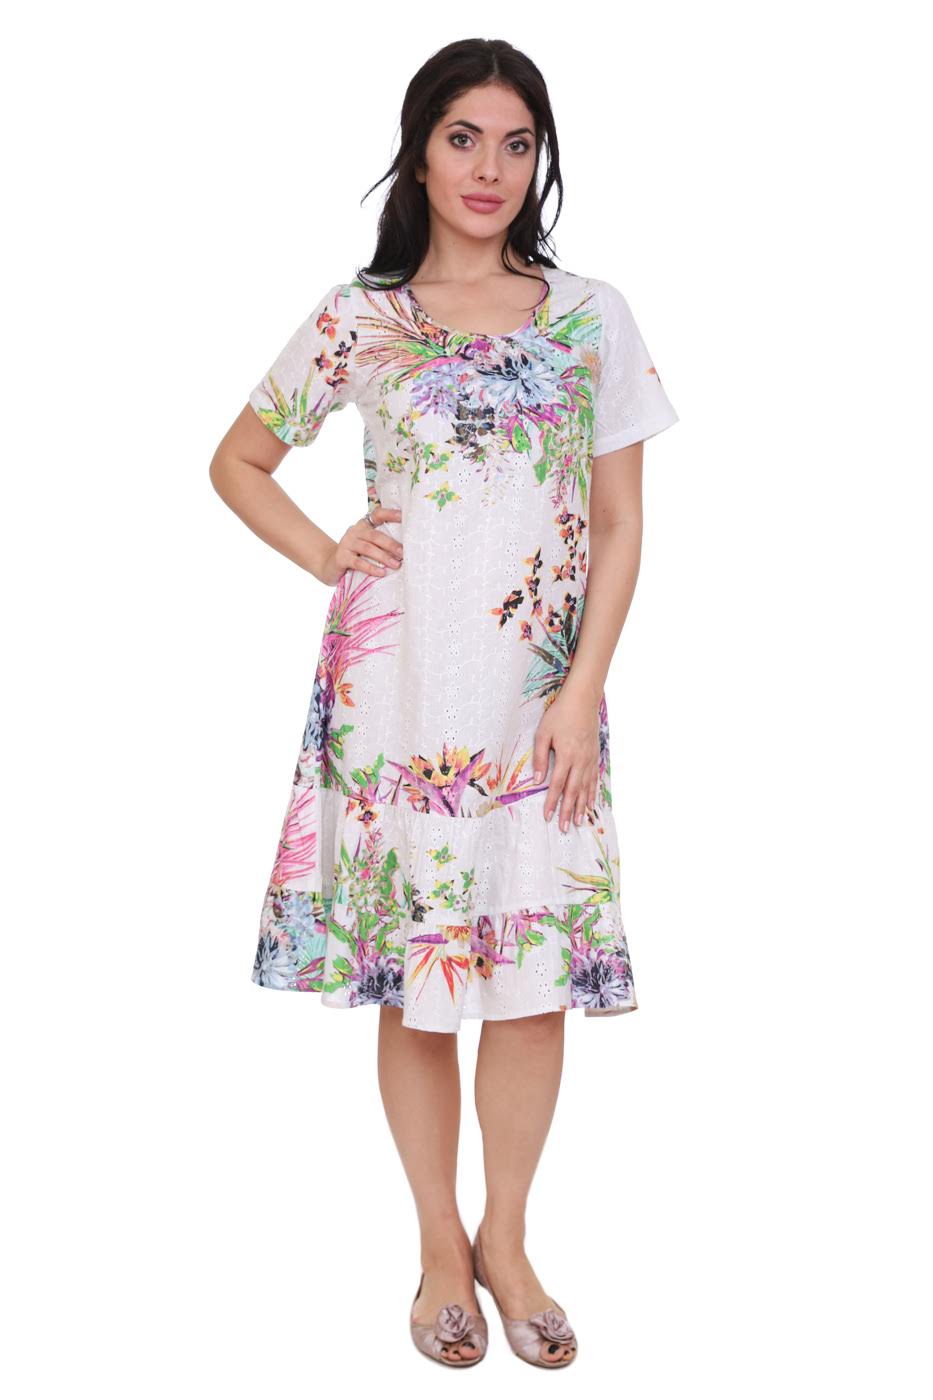 Платье Asshur Цвет: Белый, Мультиколор (48), размер {}{} gng461337 Платье Asshur Цвет: Белый, Мультиколор (48) - фото 1